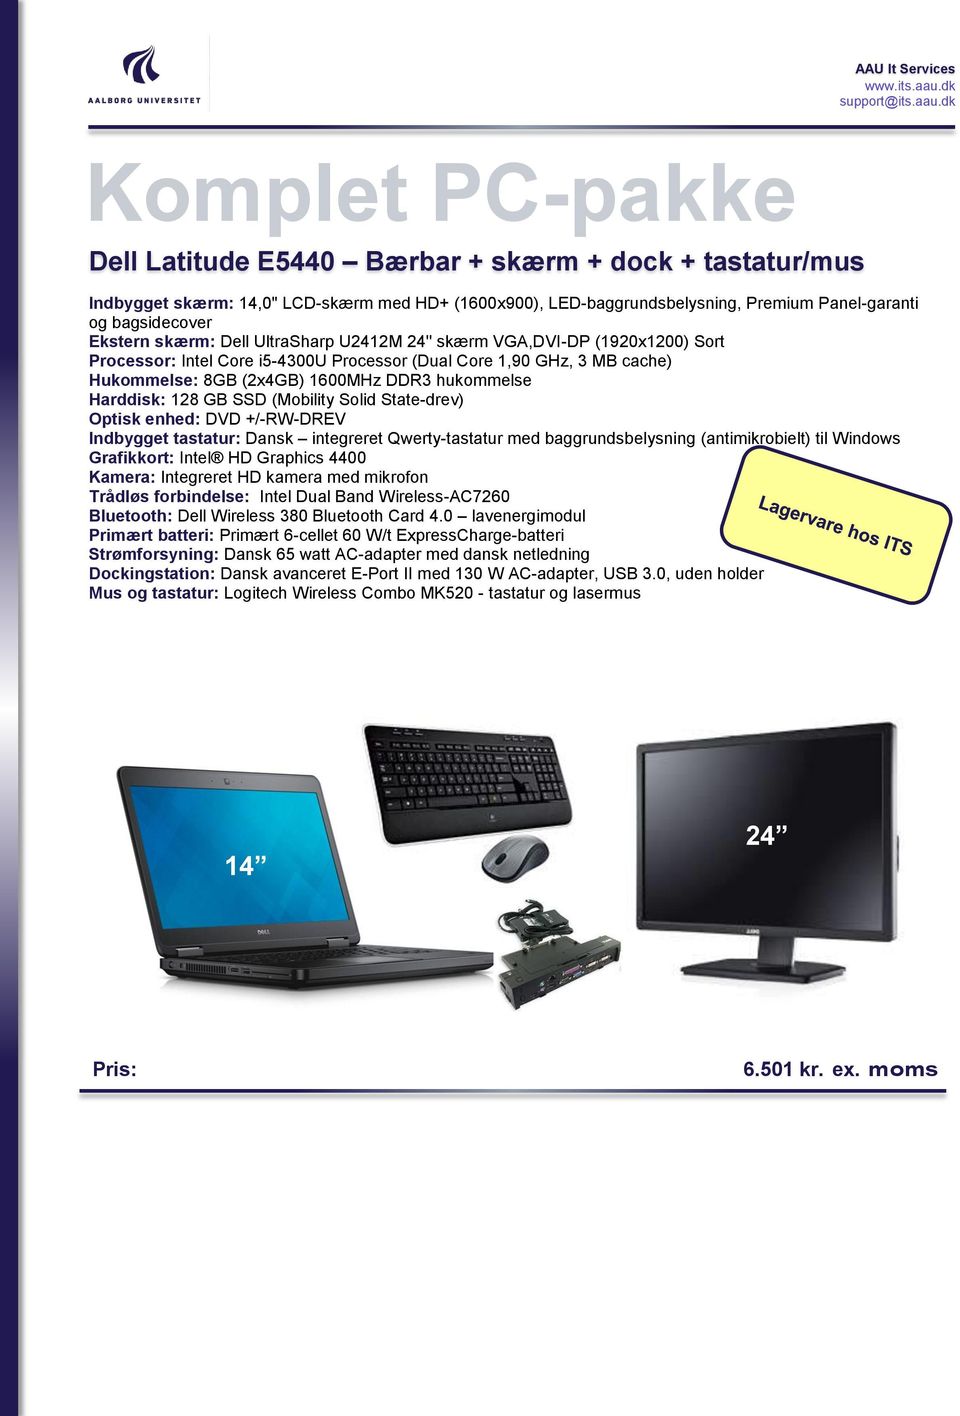 Harddisk: 128 GB SSD (Mobility Solid State-drev) Optisk enhed: DVD +/-RW-DREV Indbygget tastatur: Dansk integreret Qwerty-tastatur med baggrundsbelysning (antimikrobielt) til Windows Grafikkort: